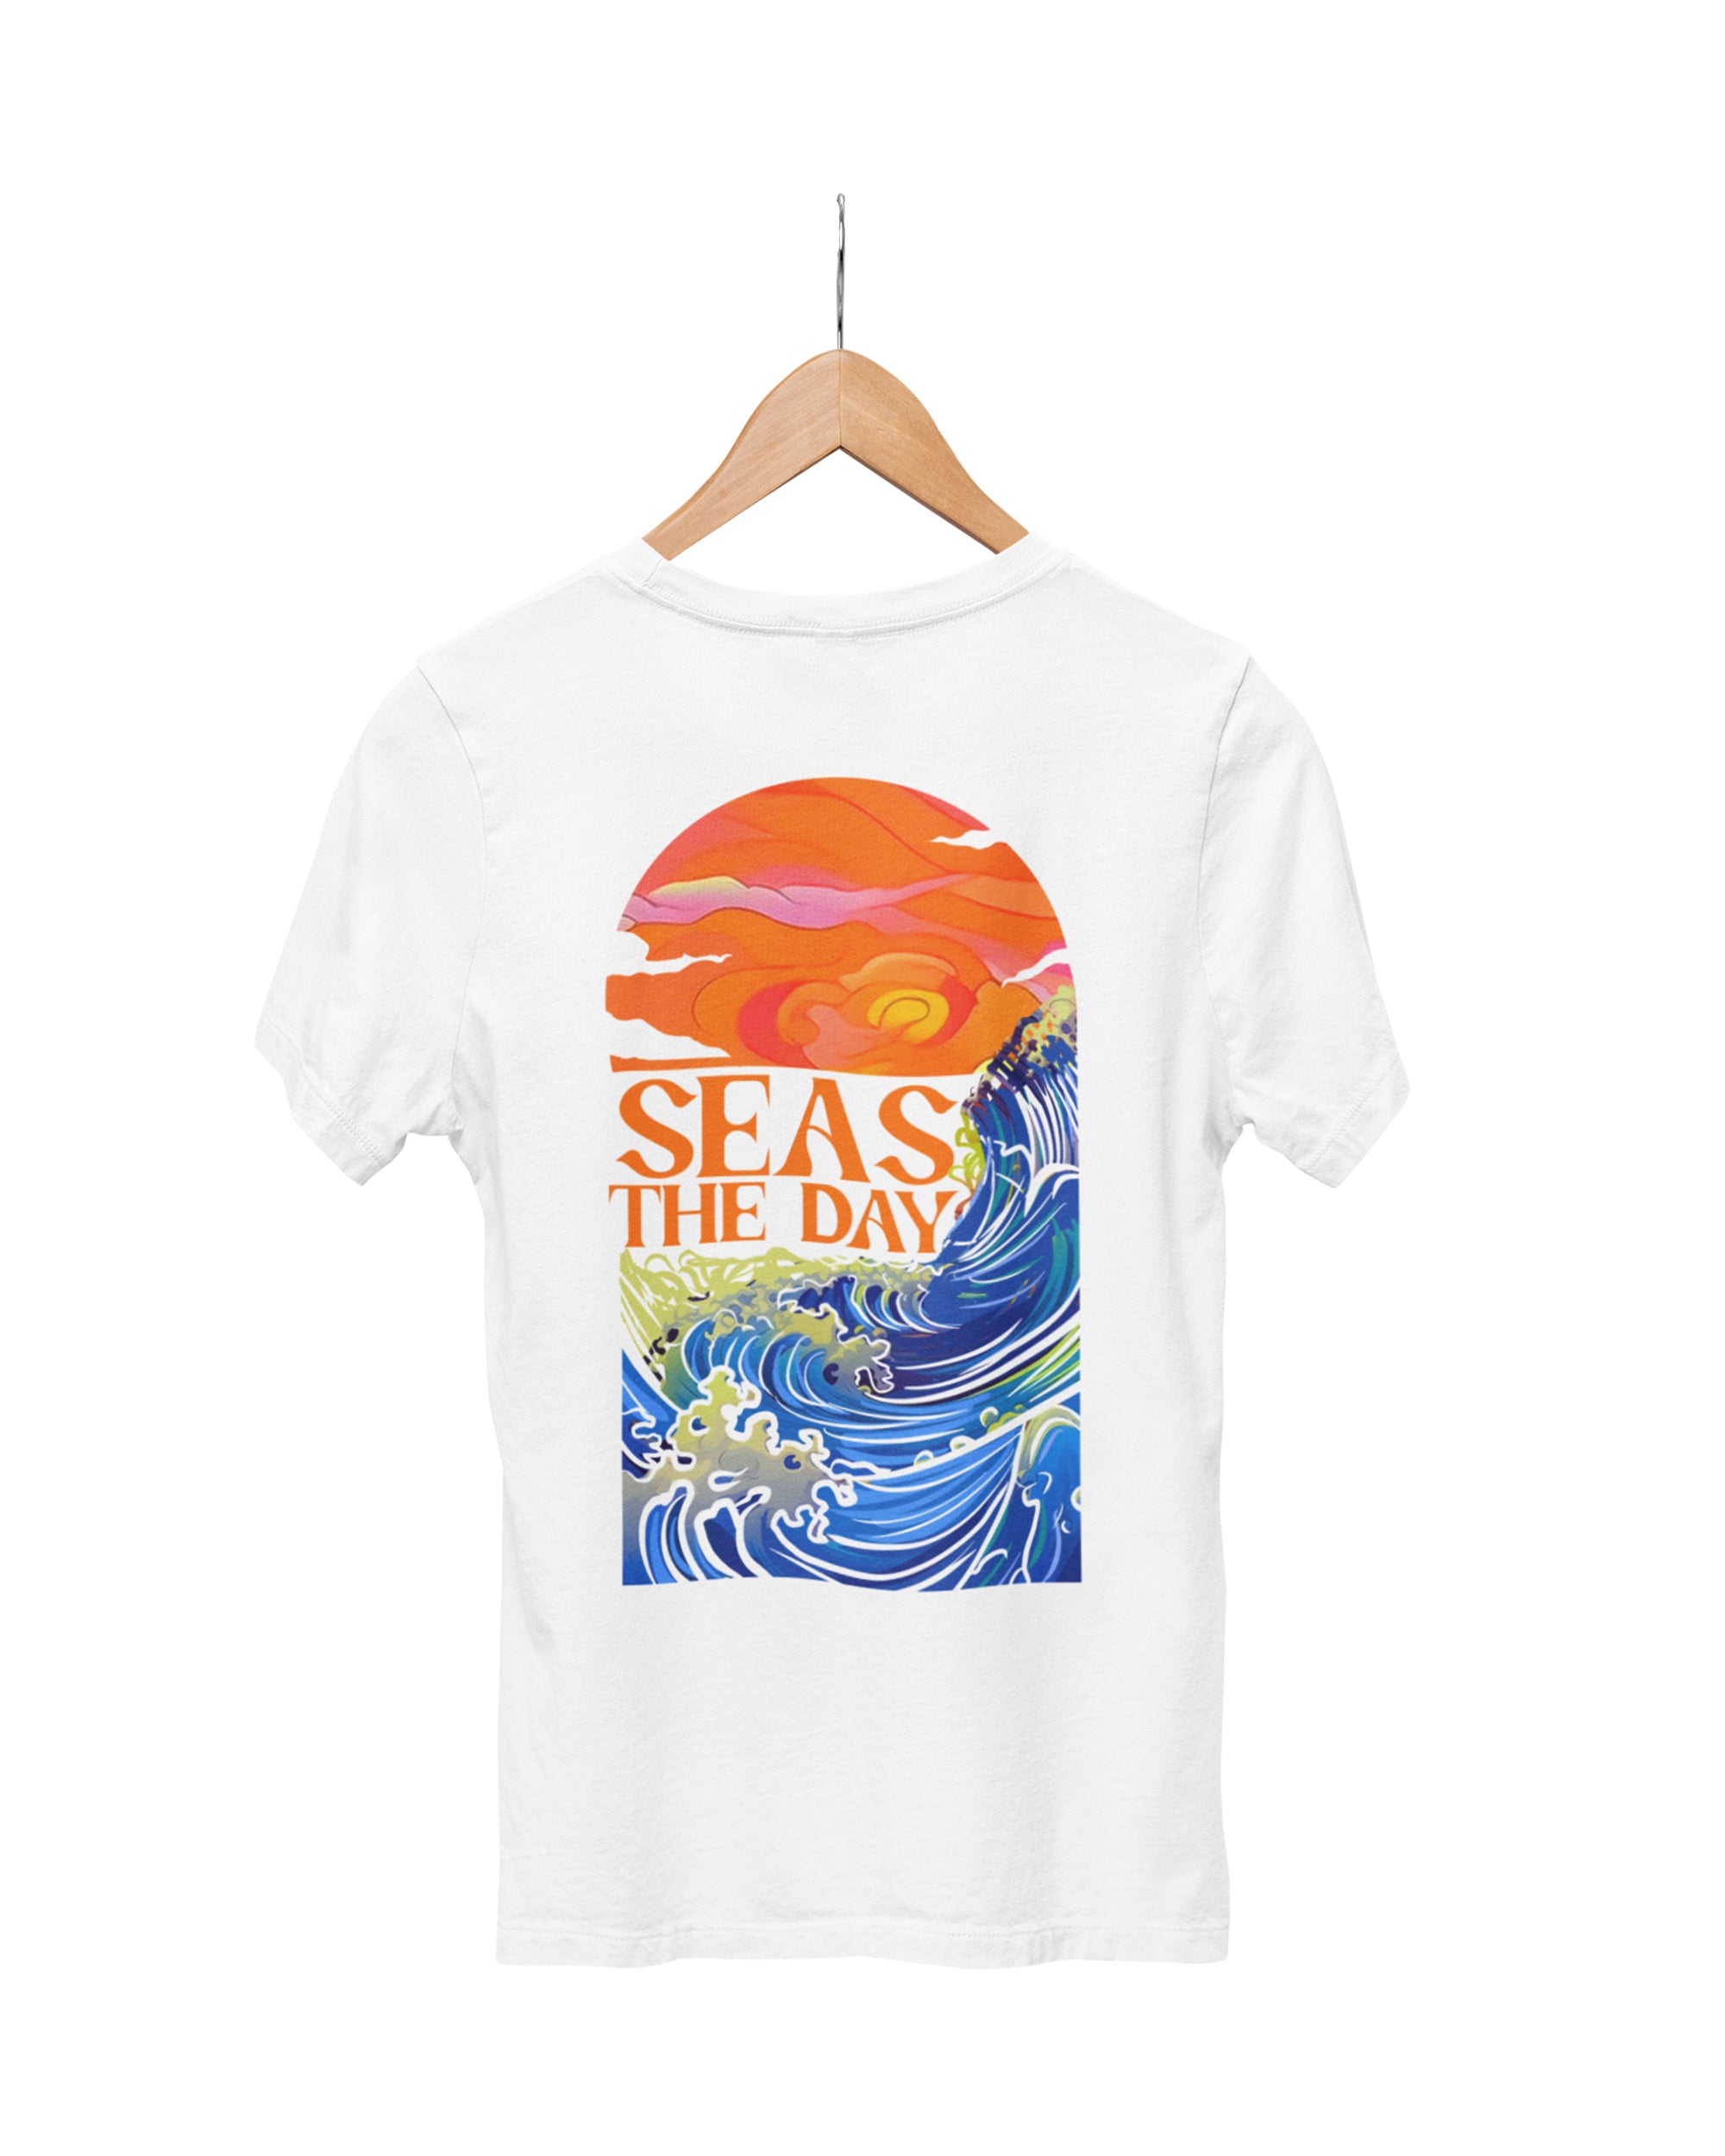 Seas The Day Tshirt